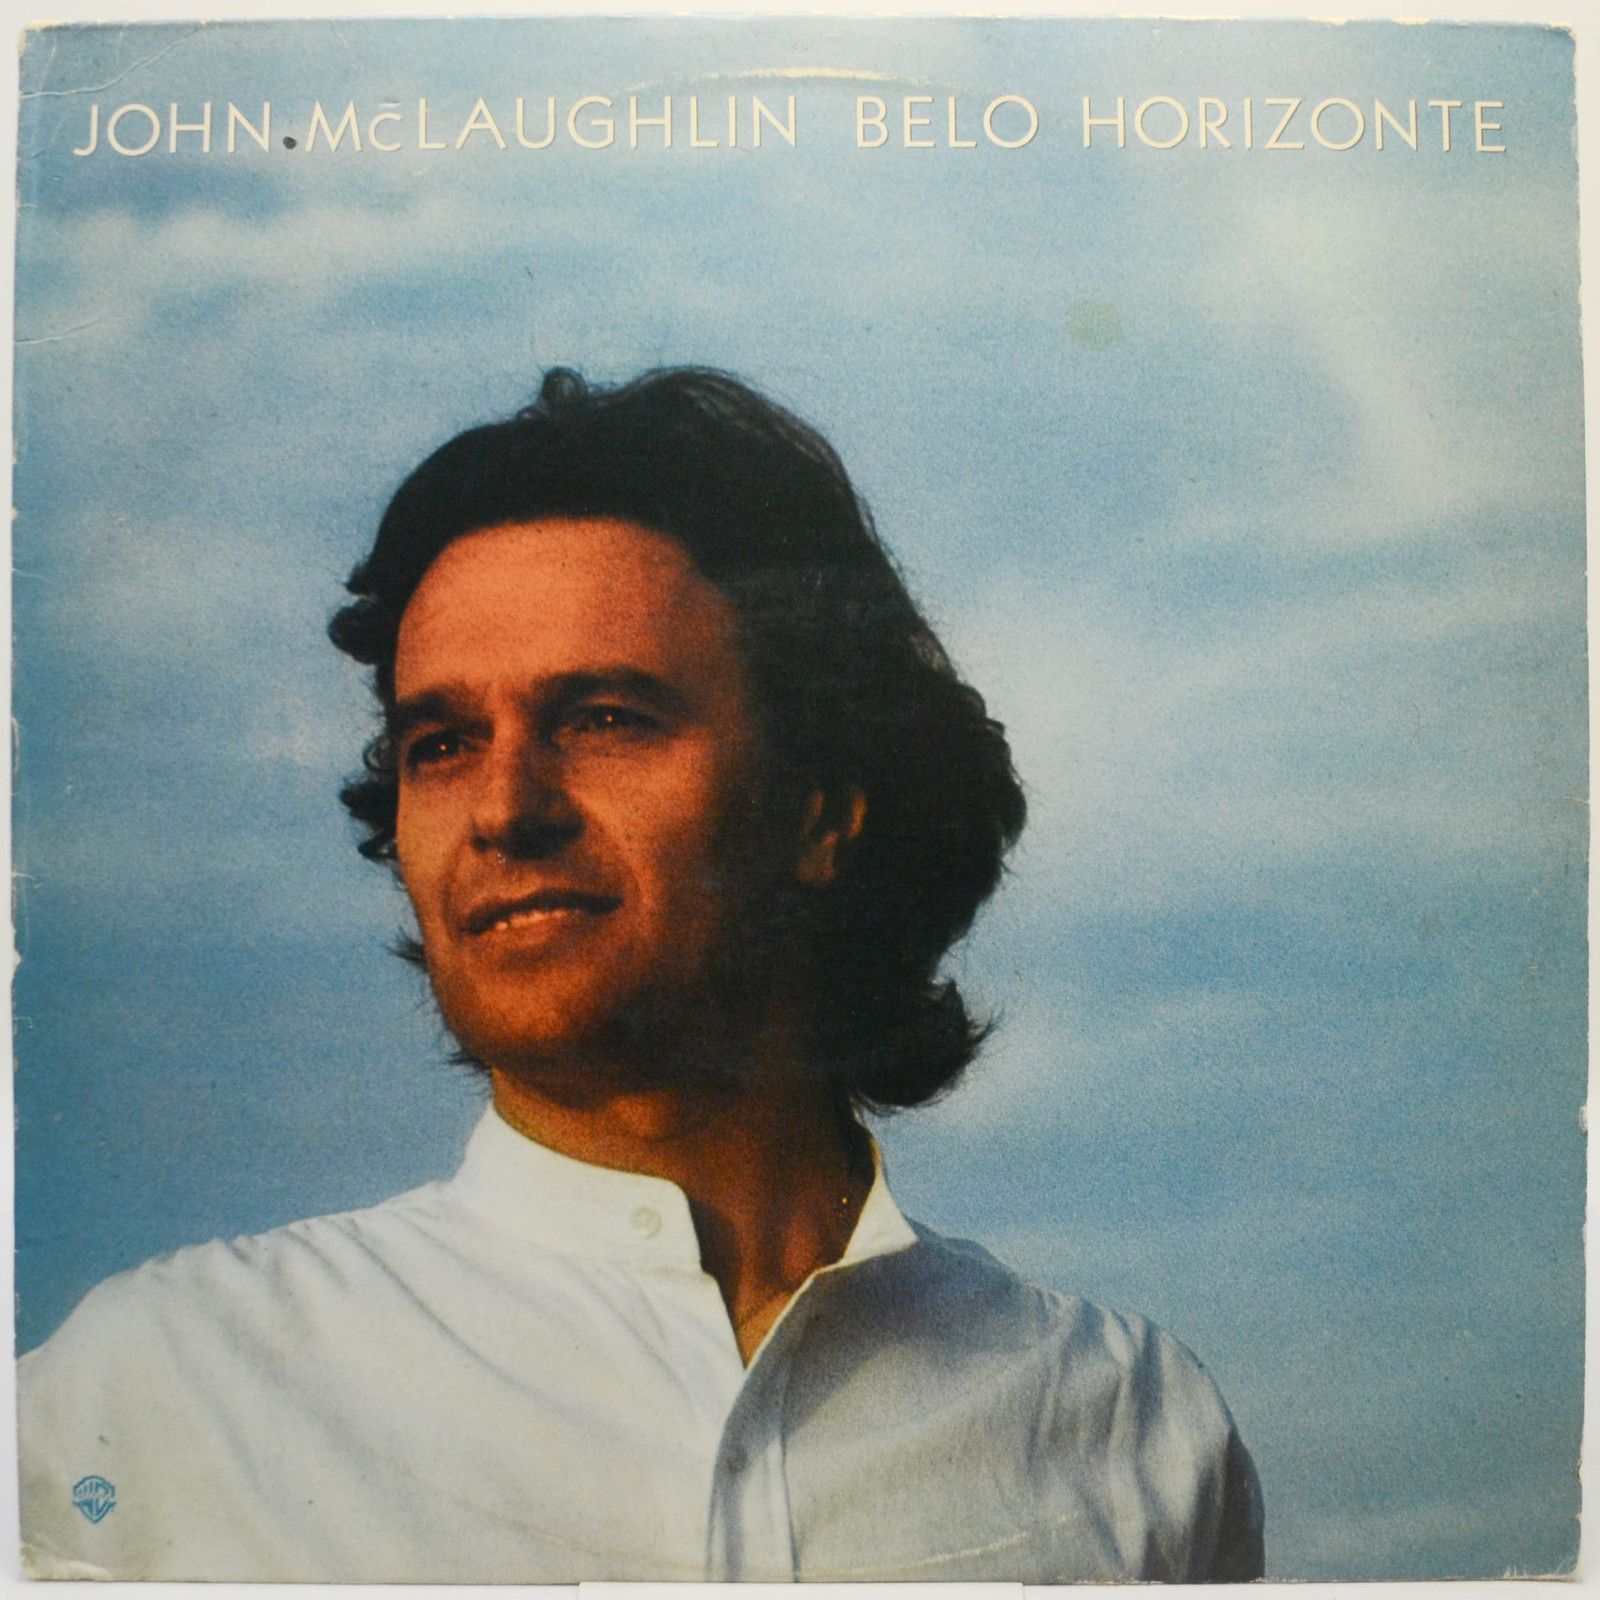 John McLaughlin — Belo Horizonte (USA), 1981